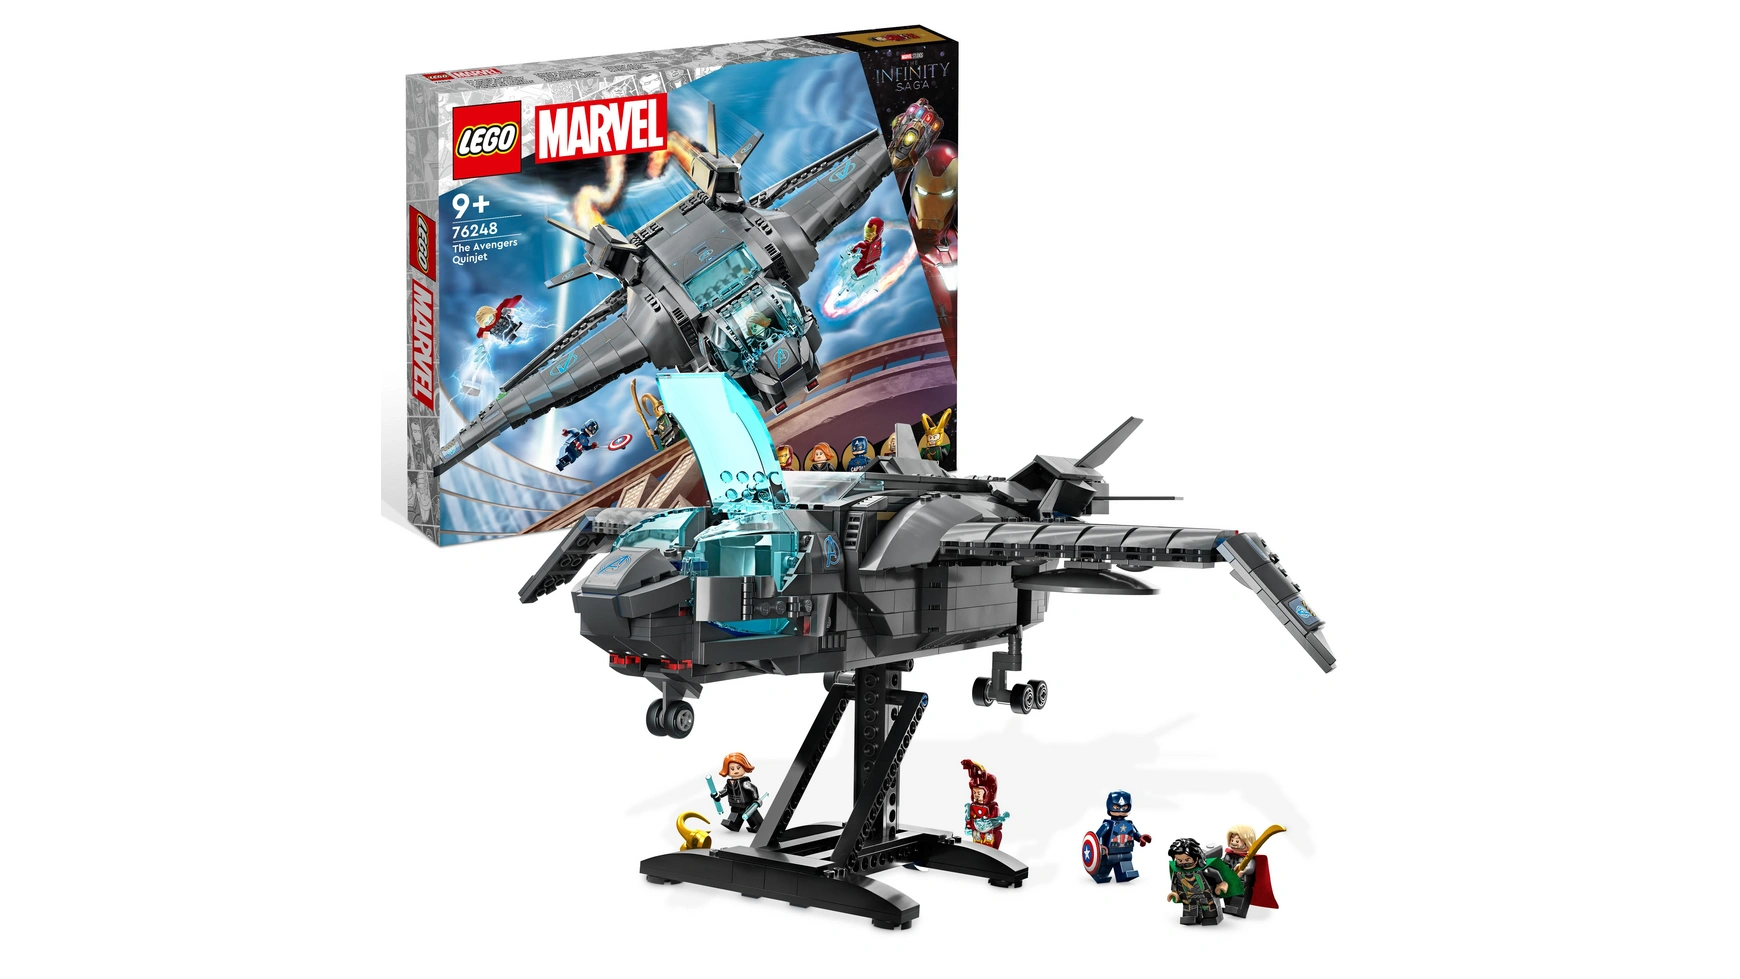 Lego Marvel Набор космического корабля Мстители Квинджет конструктор lego marvel квинджет мстителей 76248 795 деталей